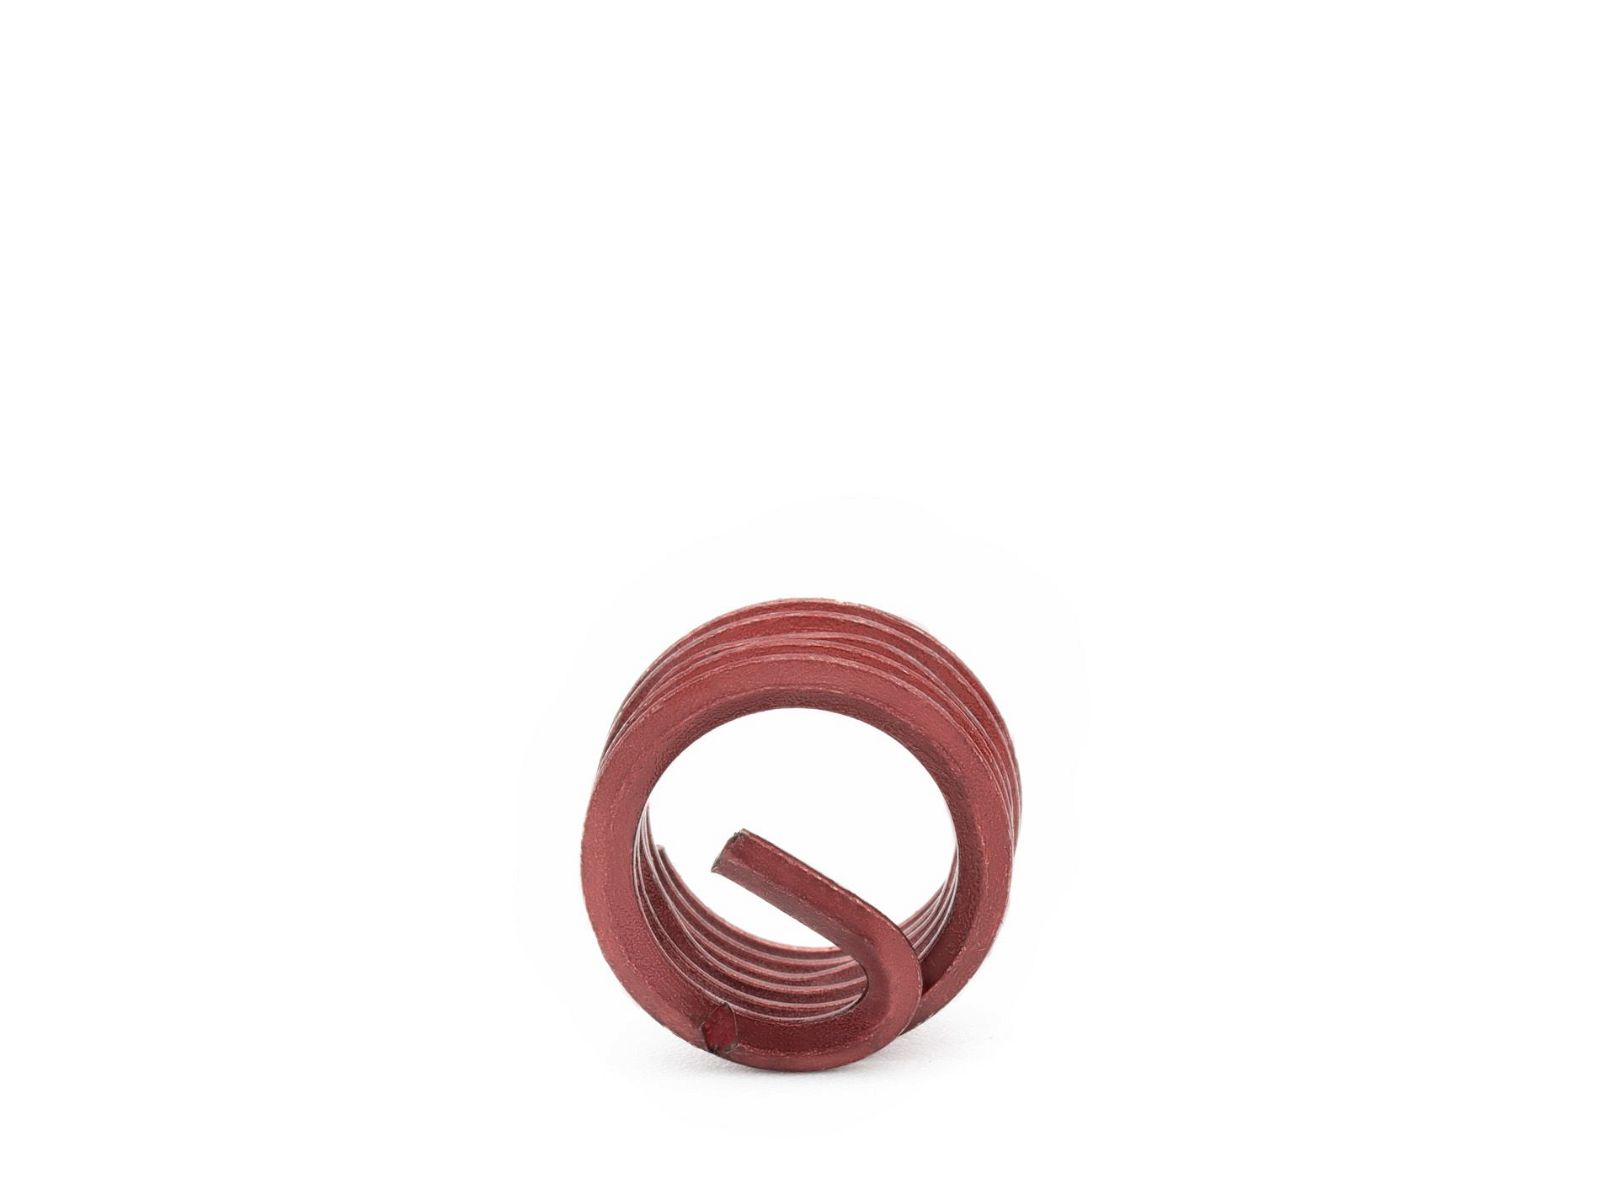 BaerCoil Wire Thread Inserts M 18 x 2.5 - 1.0 D (18 mm) - screw grip (screw locking) - 10 pcs.